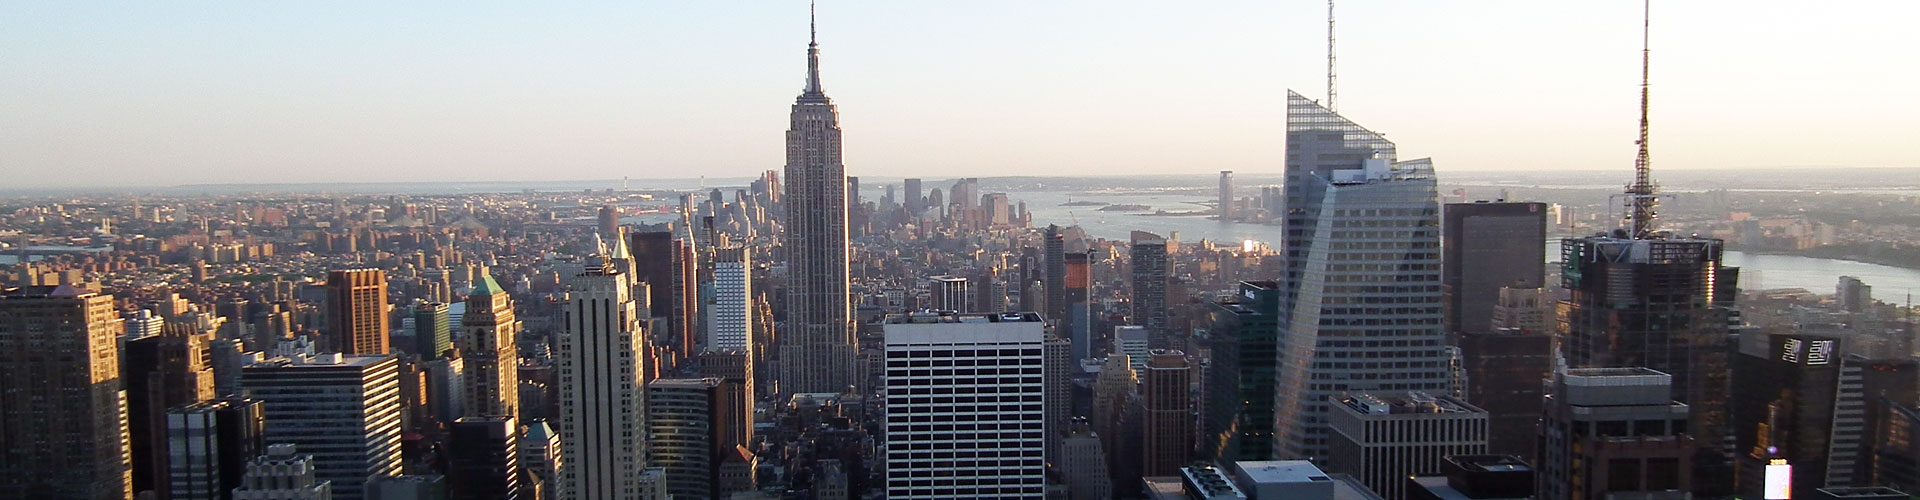 Manhattan von oben, mit Chrysler Building, New York City